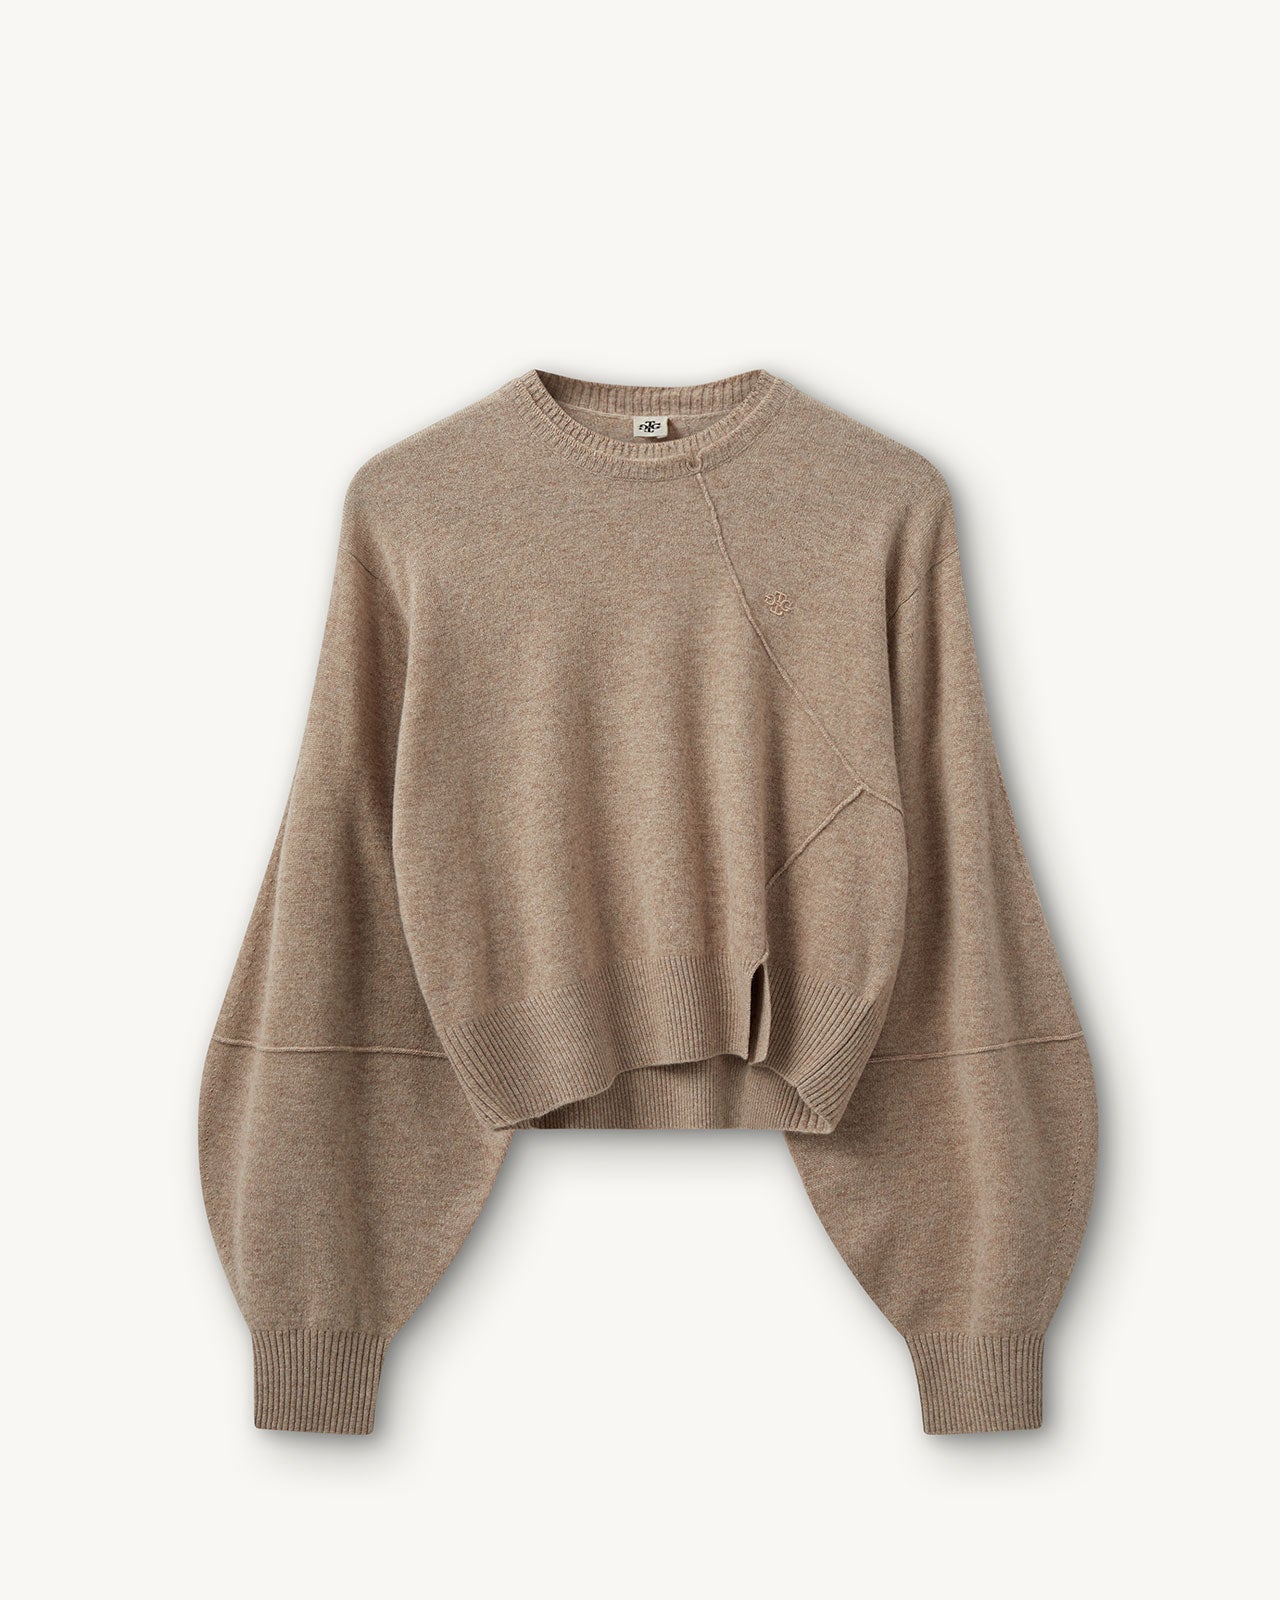 The Garment Como Neck Sweater – Shinzone